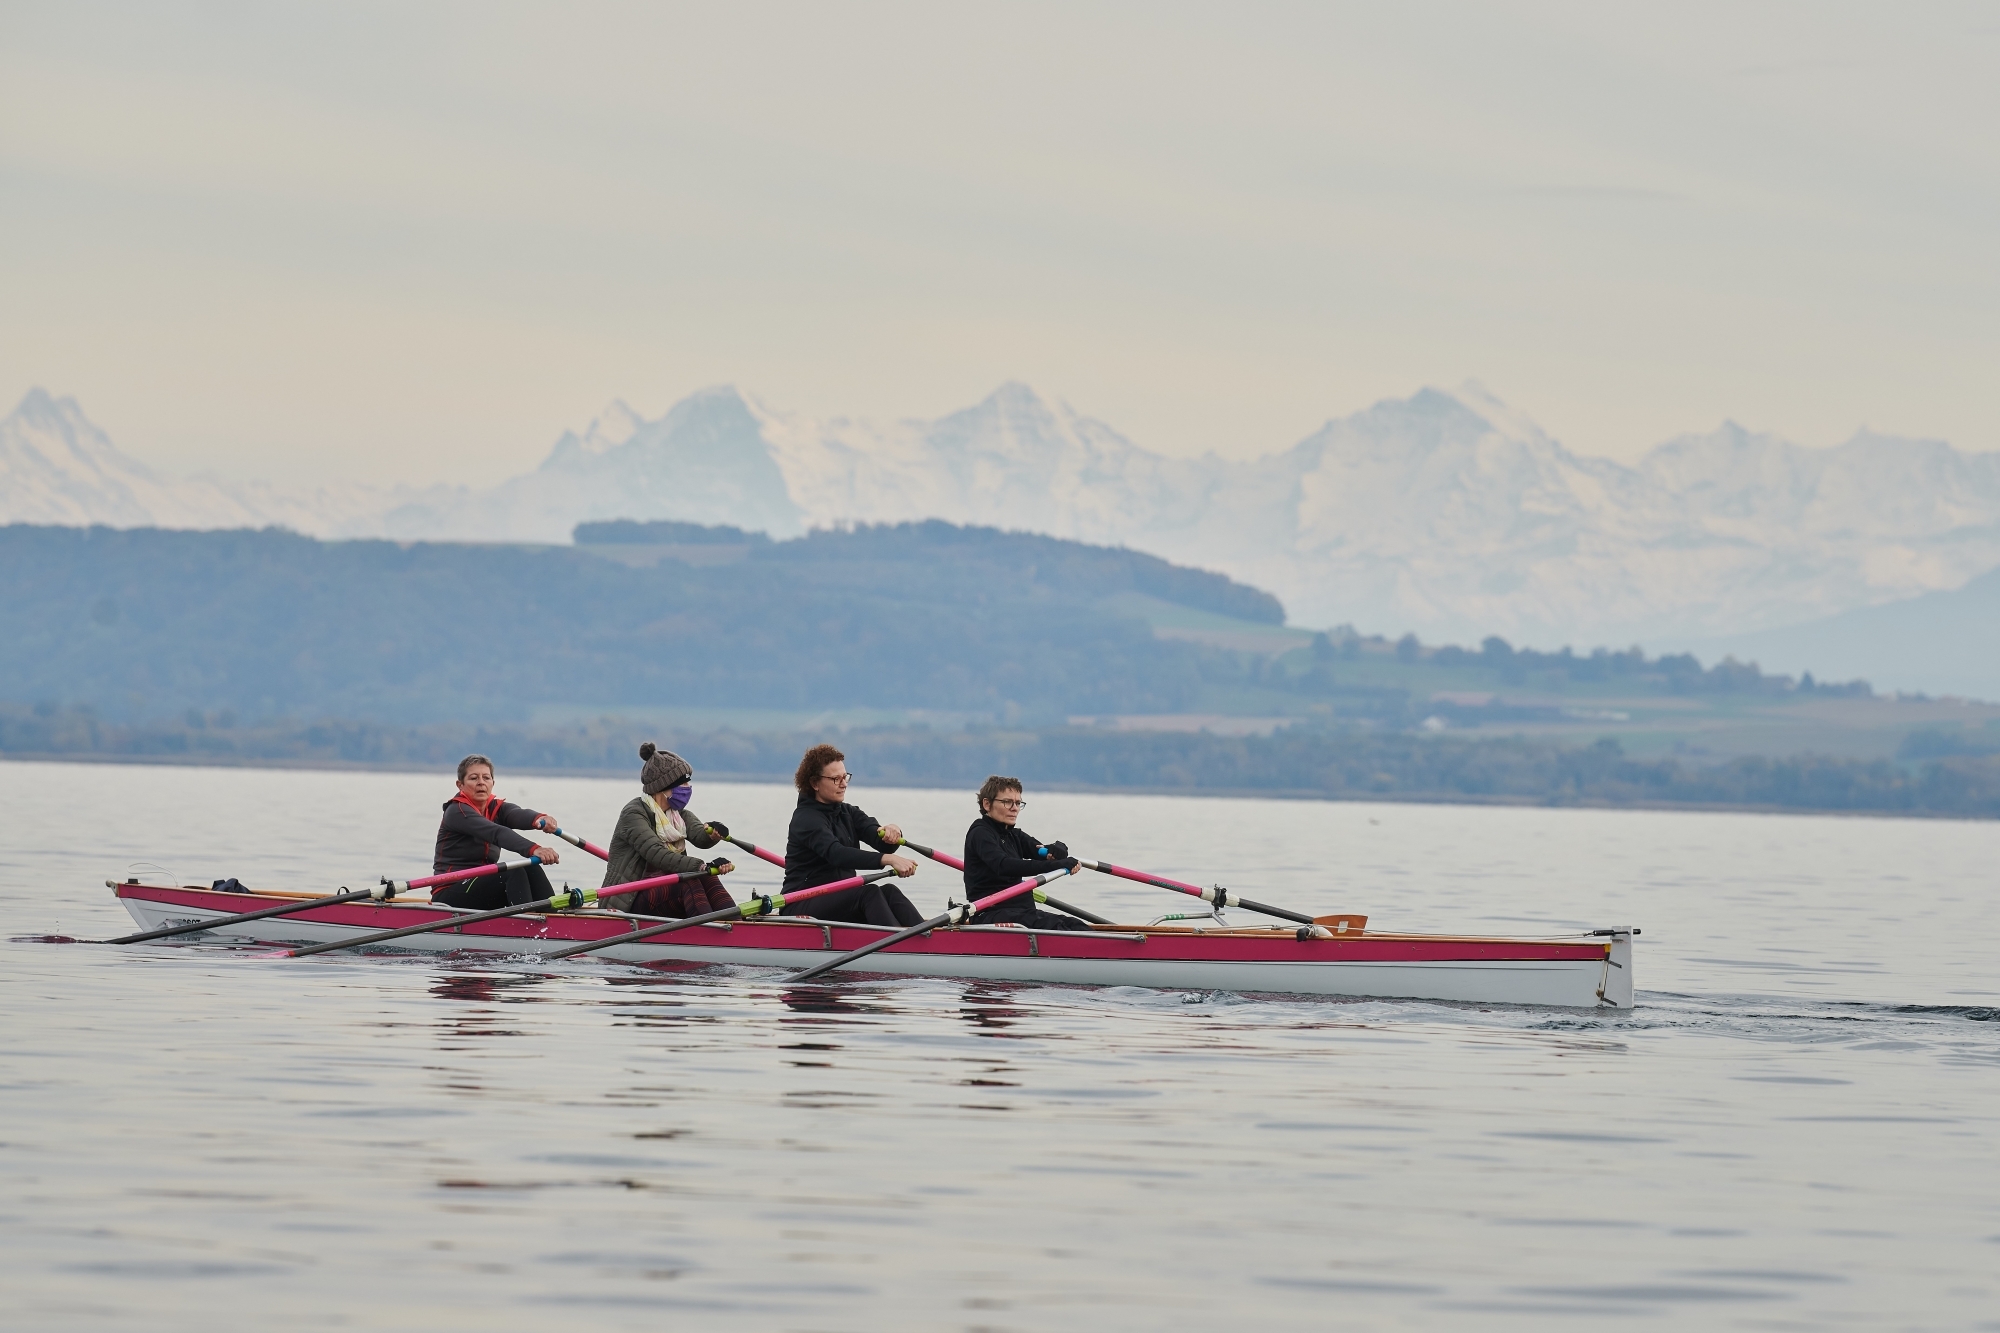 Les rameuses en rose, Elisabeth Herzig (à gauche) en tête, ont le lac de Neuchâtel comme terrain de jeu. Tout cela sous l'oeil bienveillant des trois Bernoises.